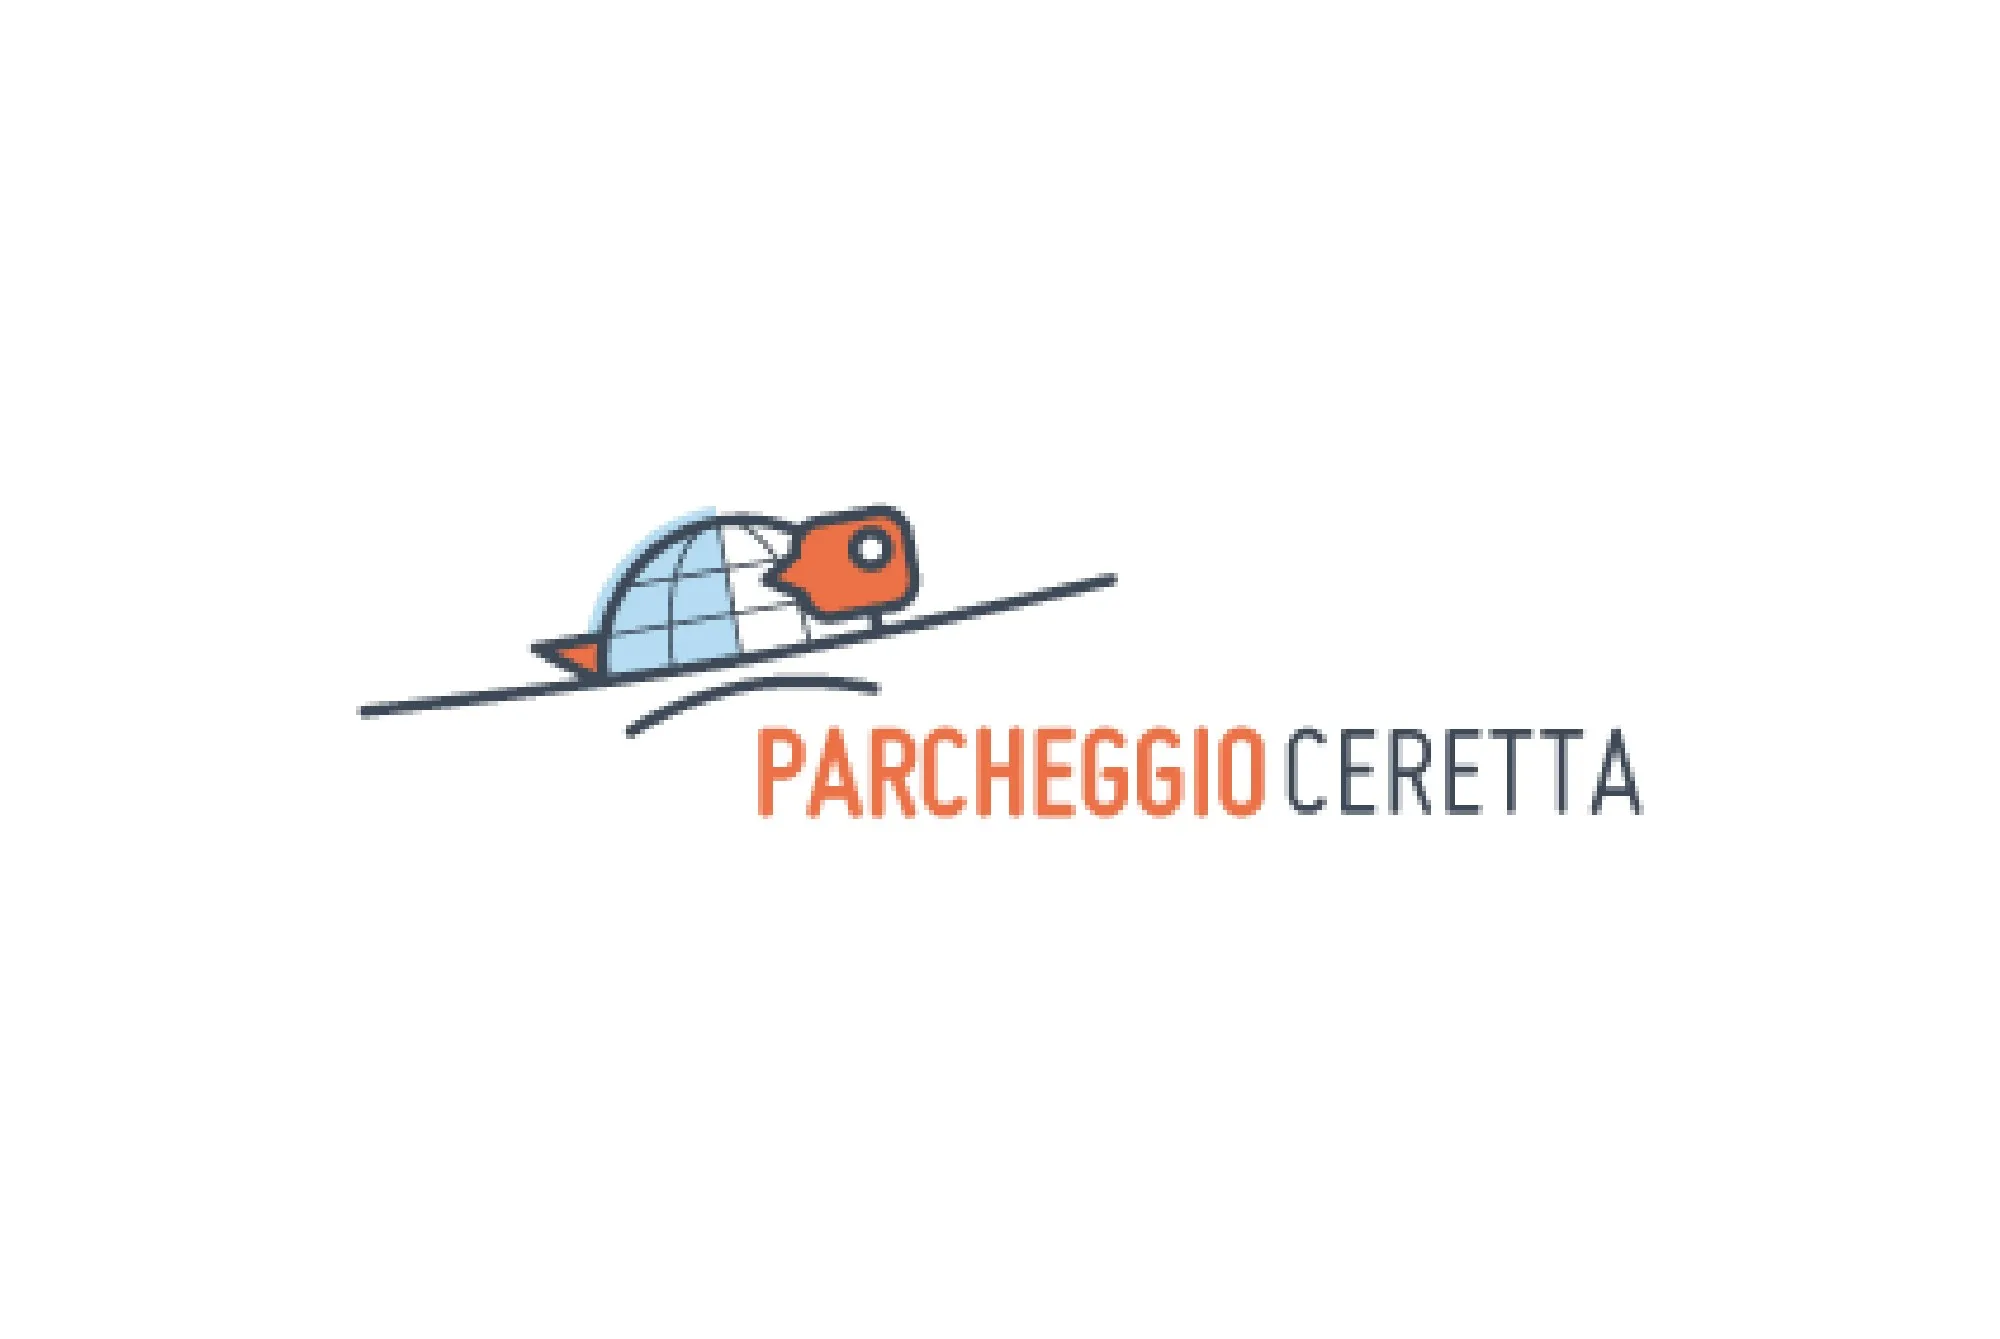 Parcheggio Ceretta (Paga online) - Turin Airport Parking - picture 1